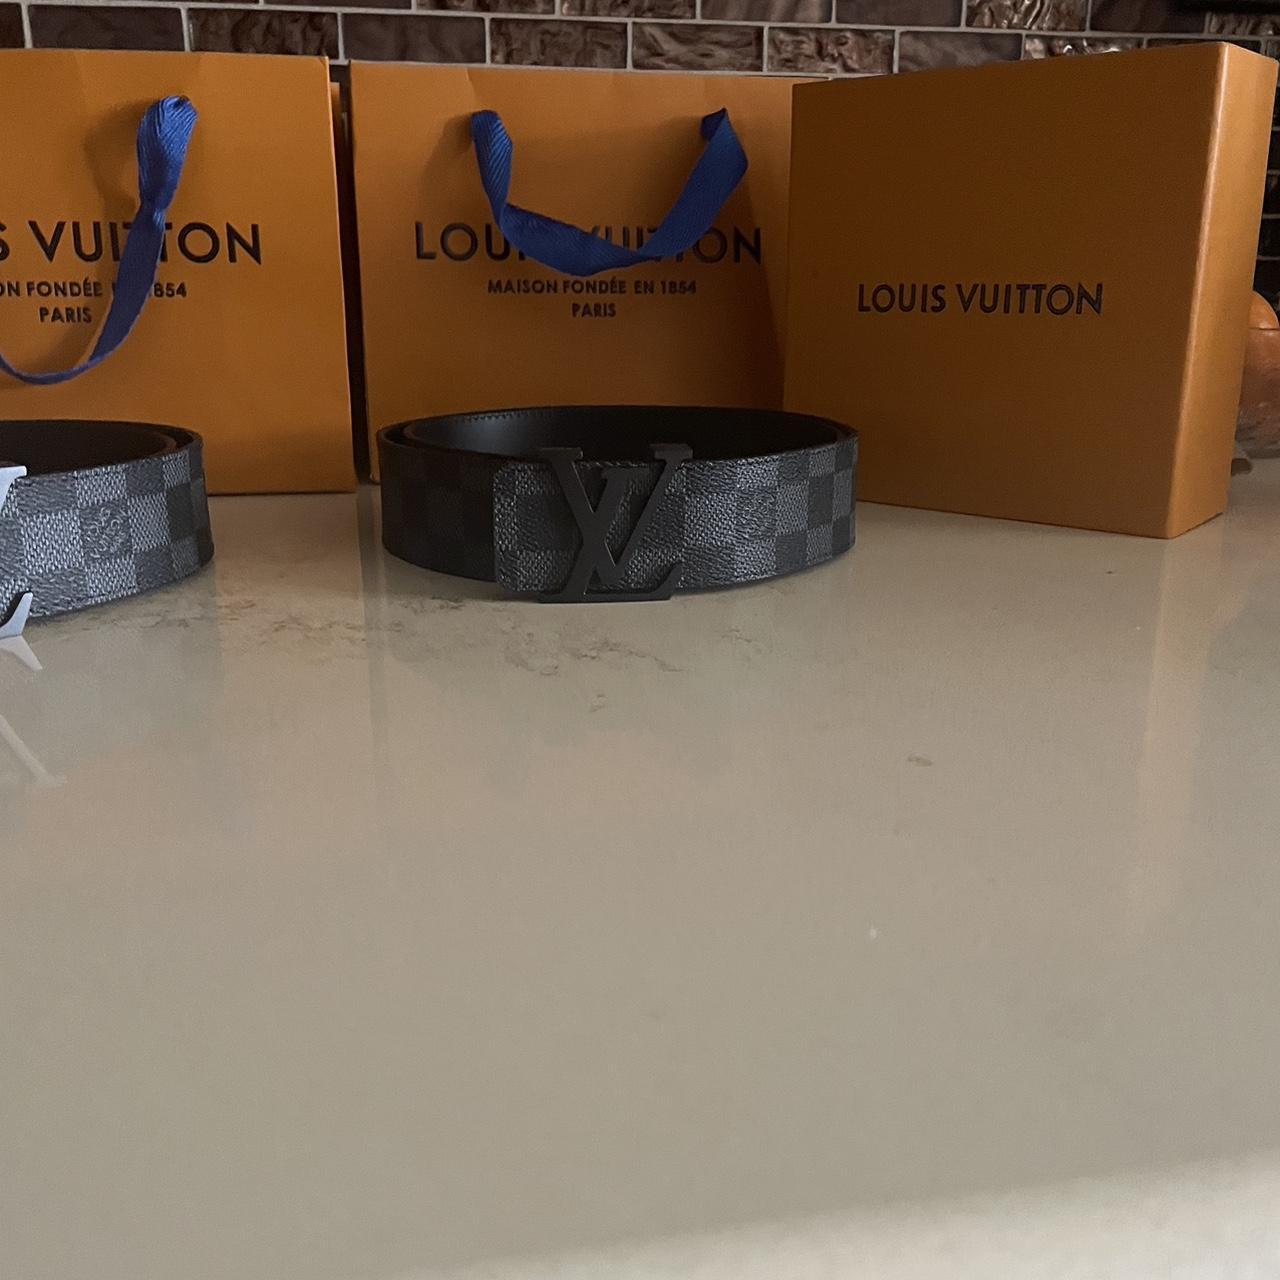 Louis Vuitton Belt Size 55. No box since it was - Depop